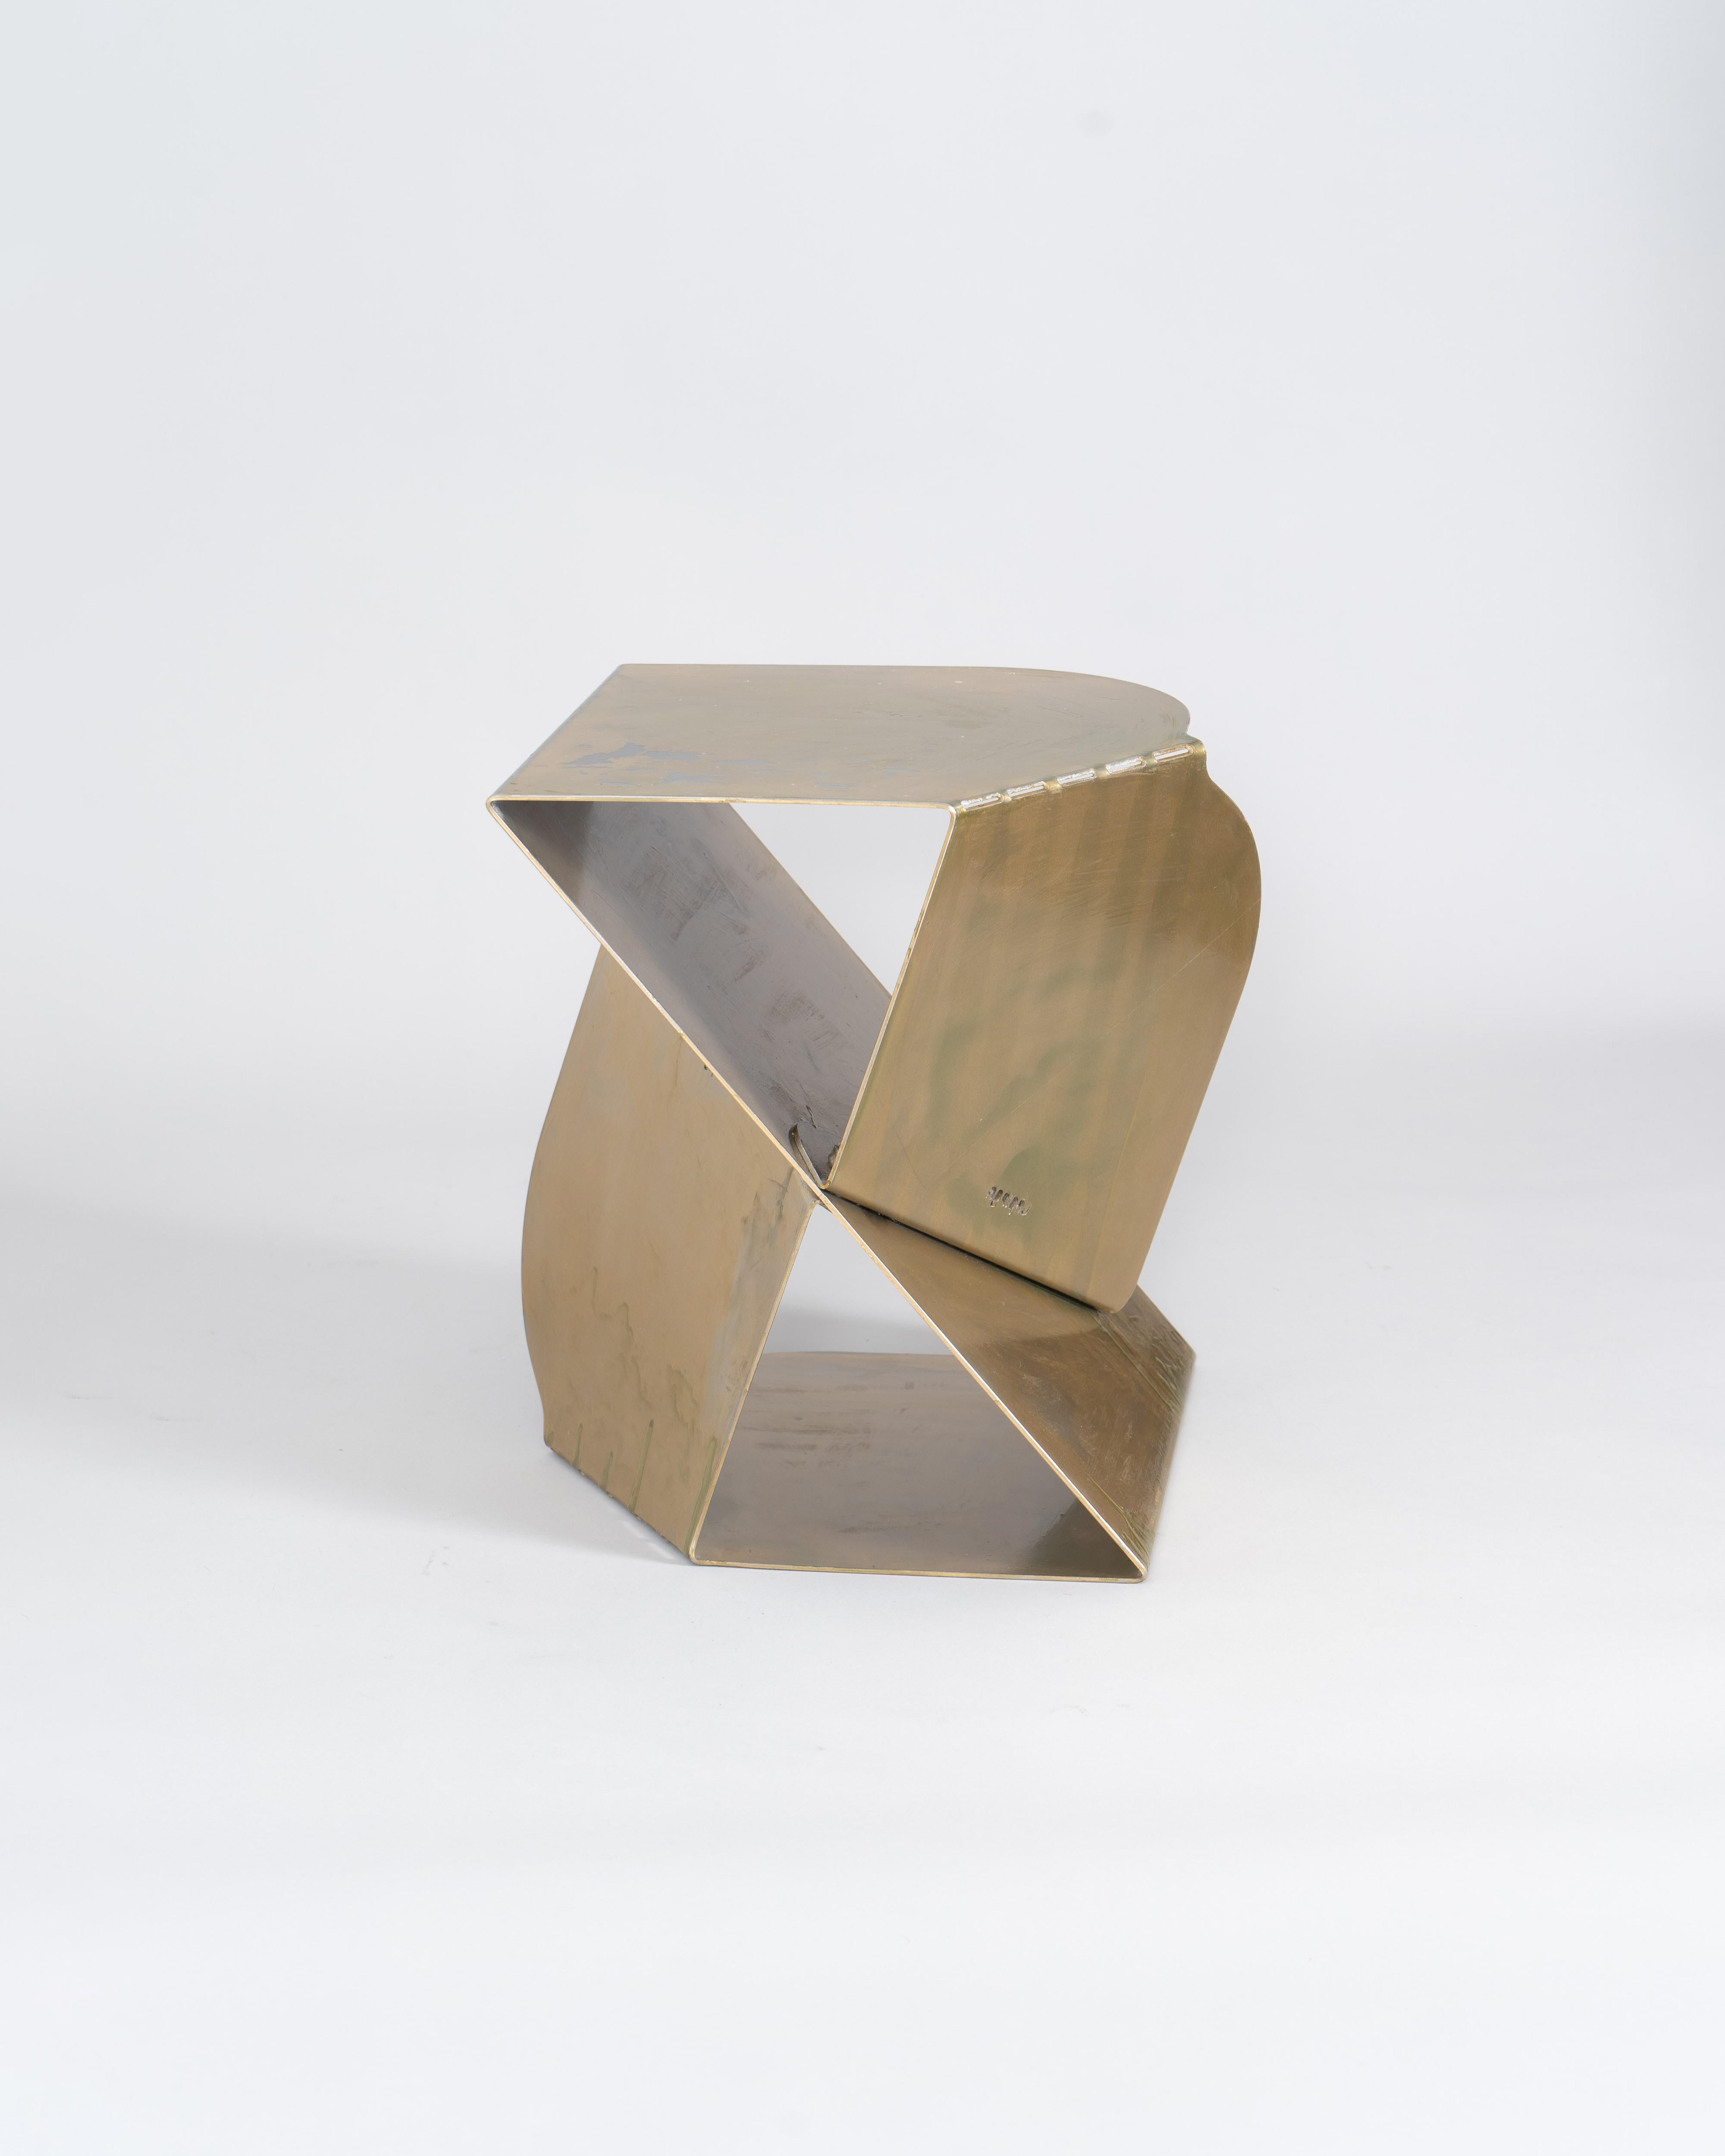 La table SovraP représente une fusion exquise entre le design contemporain et l'artisanat italien. Fabriqué avec soin par l'Edizione Enrico Girotti, il se distingue par sa structure unique, entièrement façonnée à partir d'une seule pièce de métal